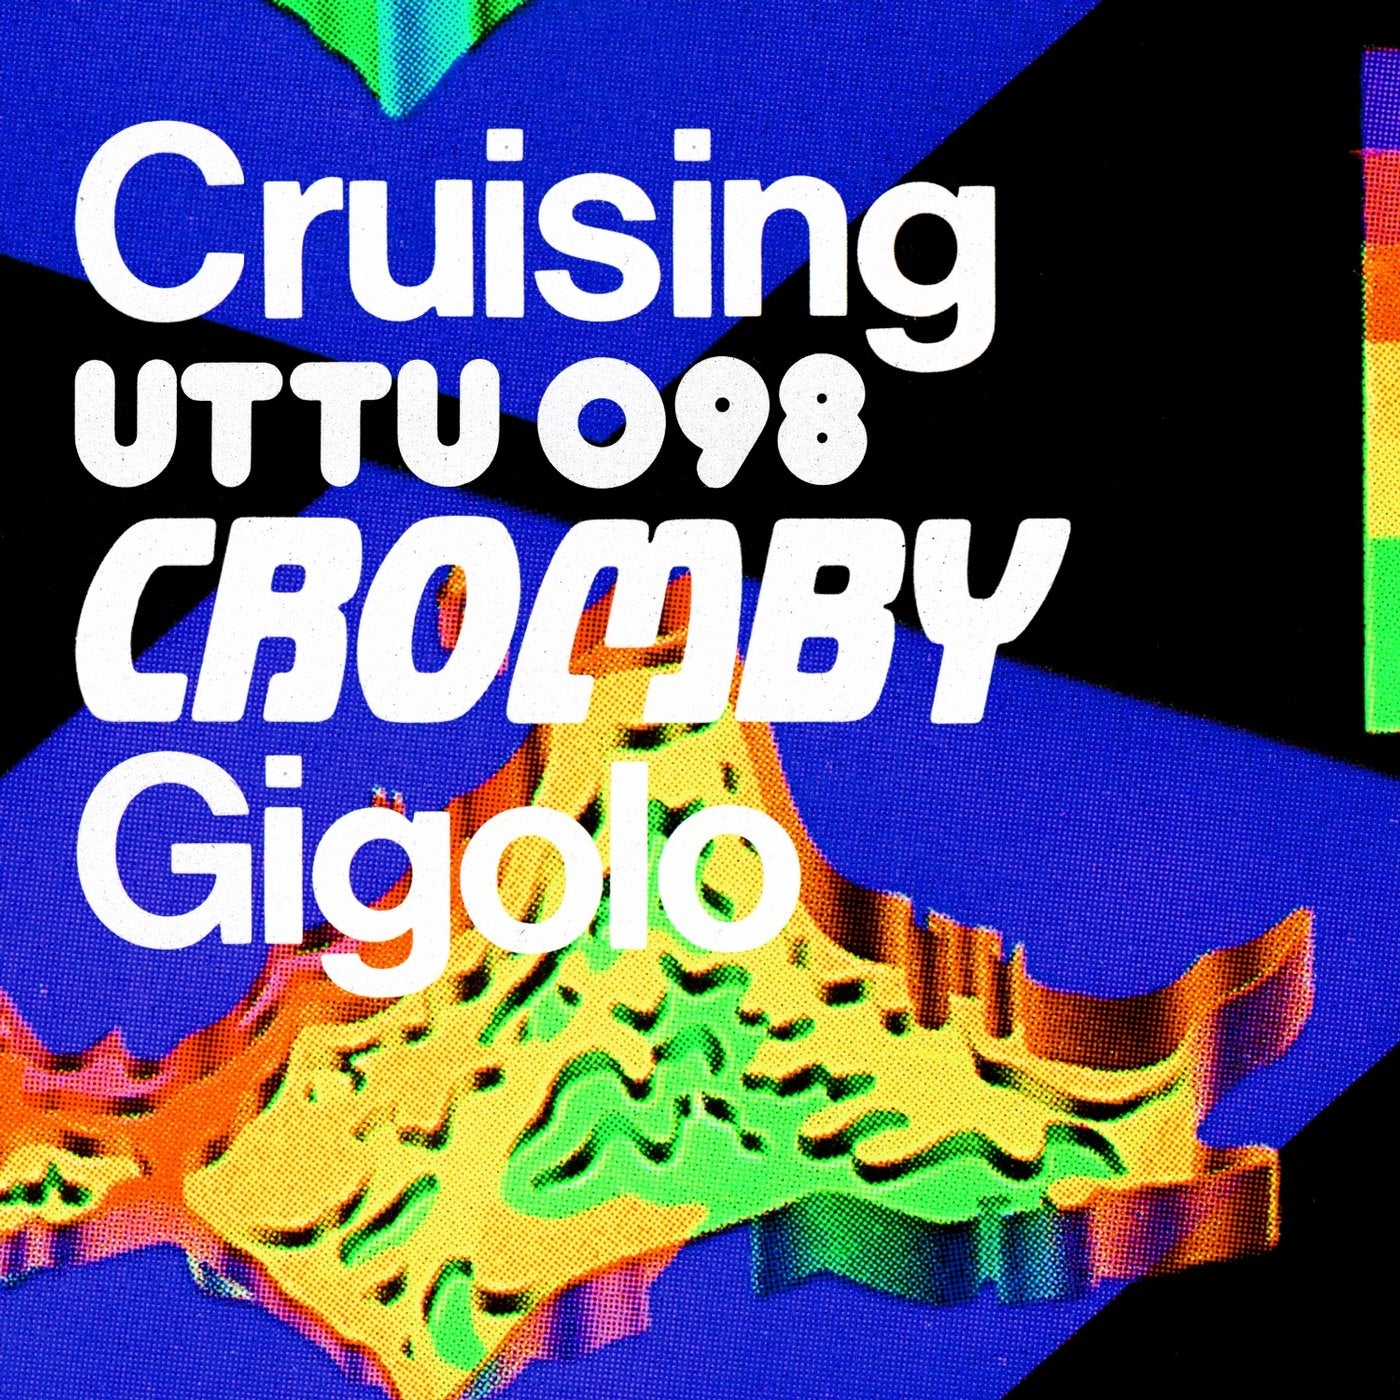 Cruising / Gigolo